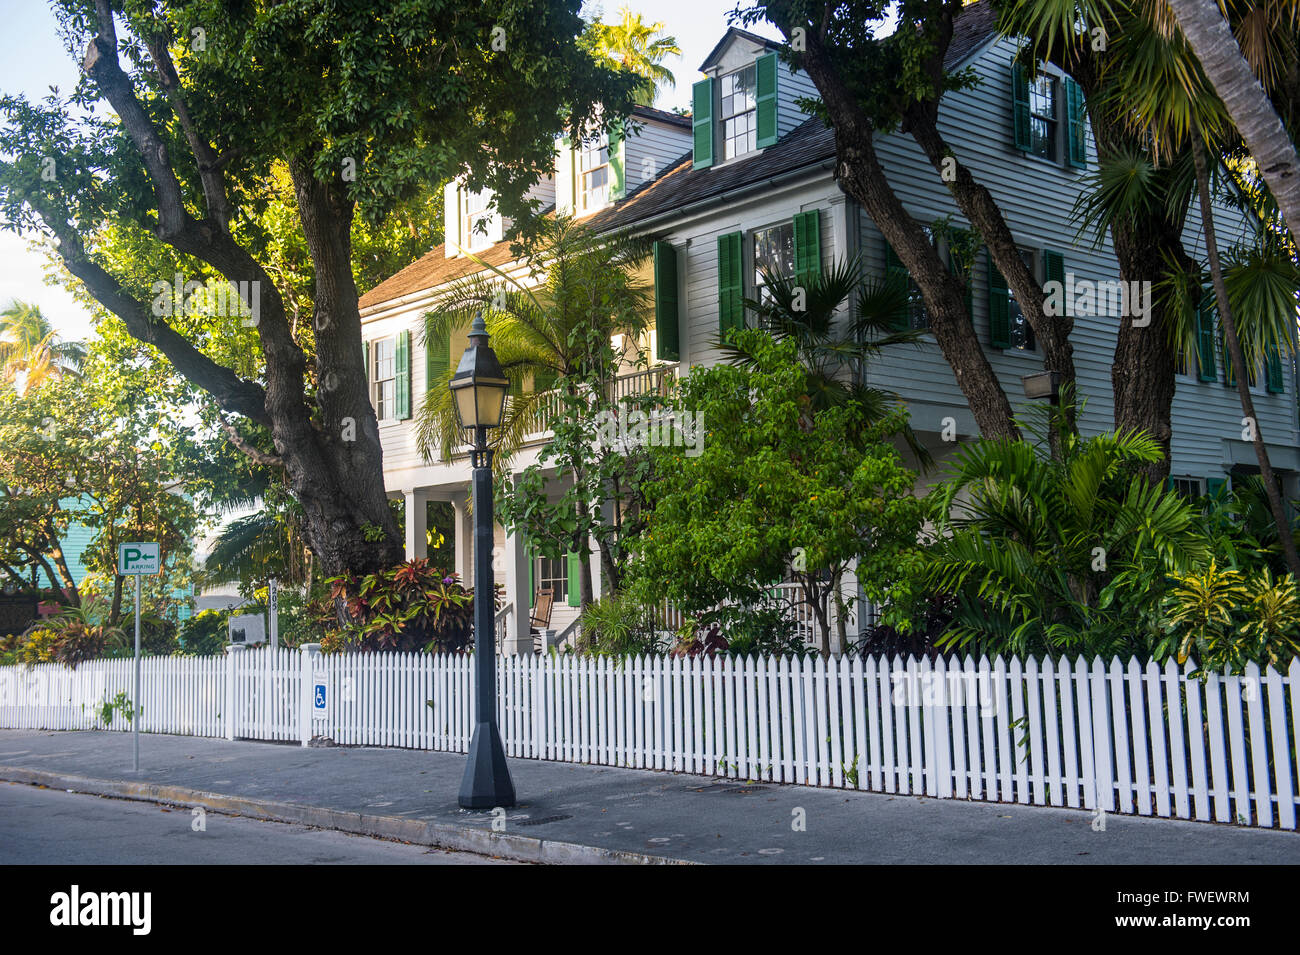 Maison coloniale à Key West, Floride, États-Unis d'Amérique, Amérique du Nord Banque D'Images